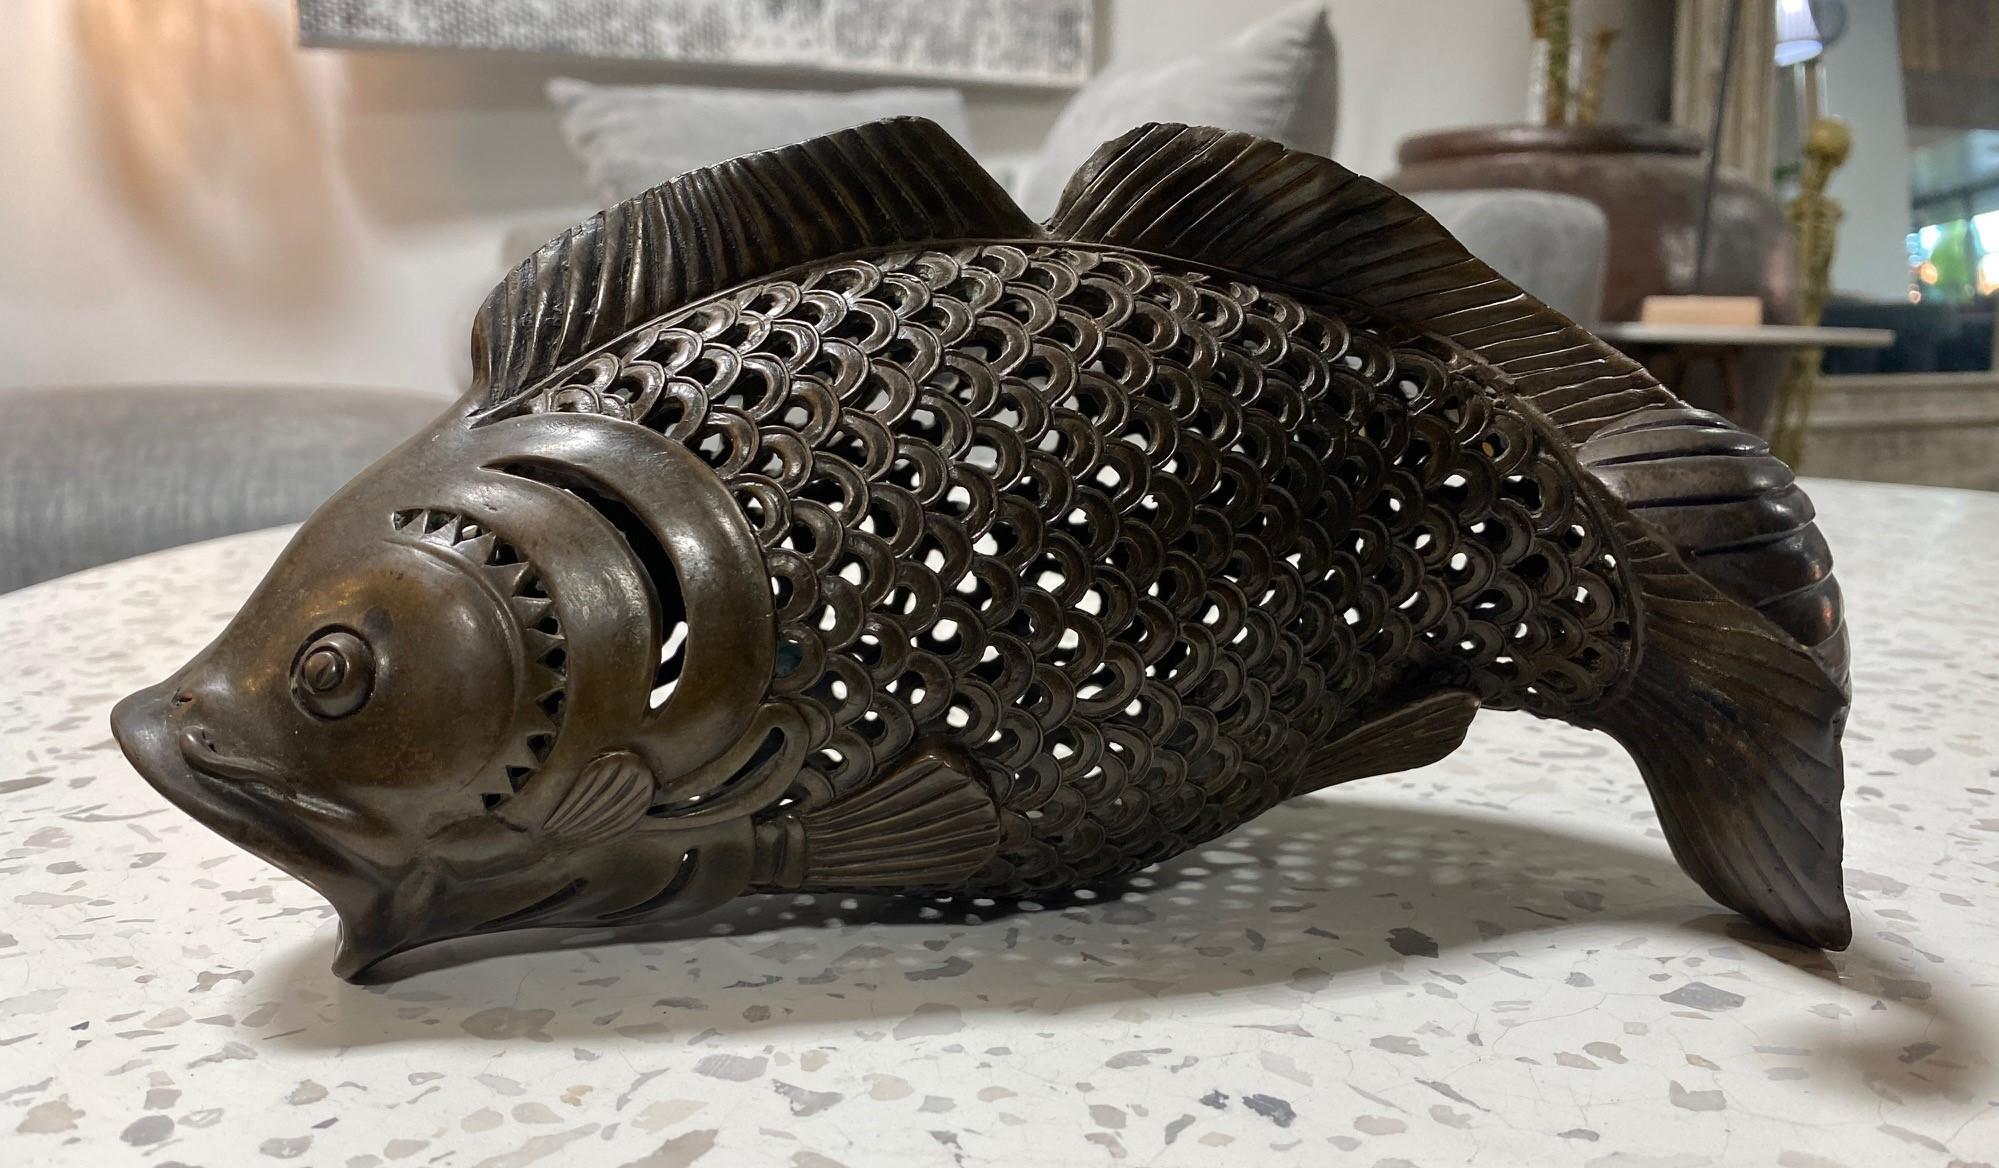 Eine schöne japanische Koi-Fisch-Skulptur aus Bronze mit wundervoller Maschenarbeit und einer leuchtenden Patina. 

Dieses Stück könnte ursprünglich als Räuchergefäß oder als dekorative Hängevorrichtung in einer traditionellen japanischen